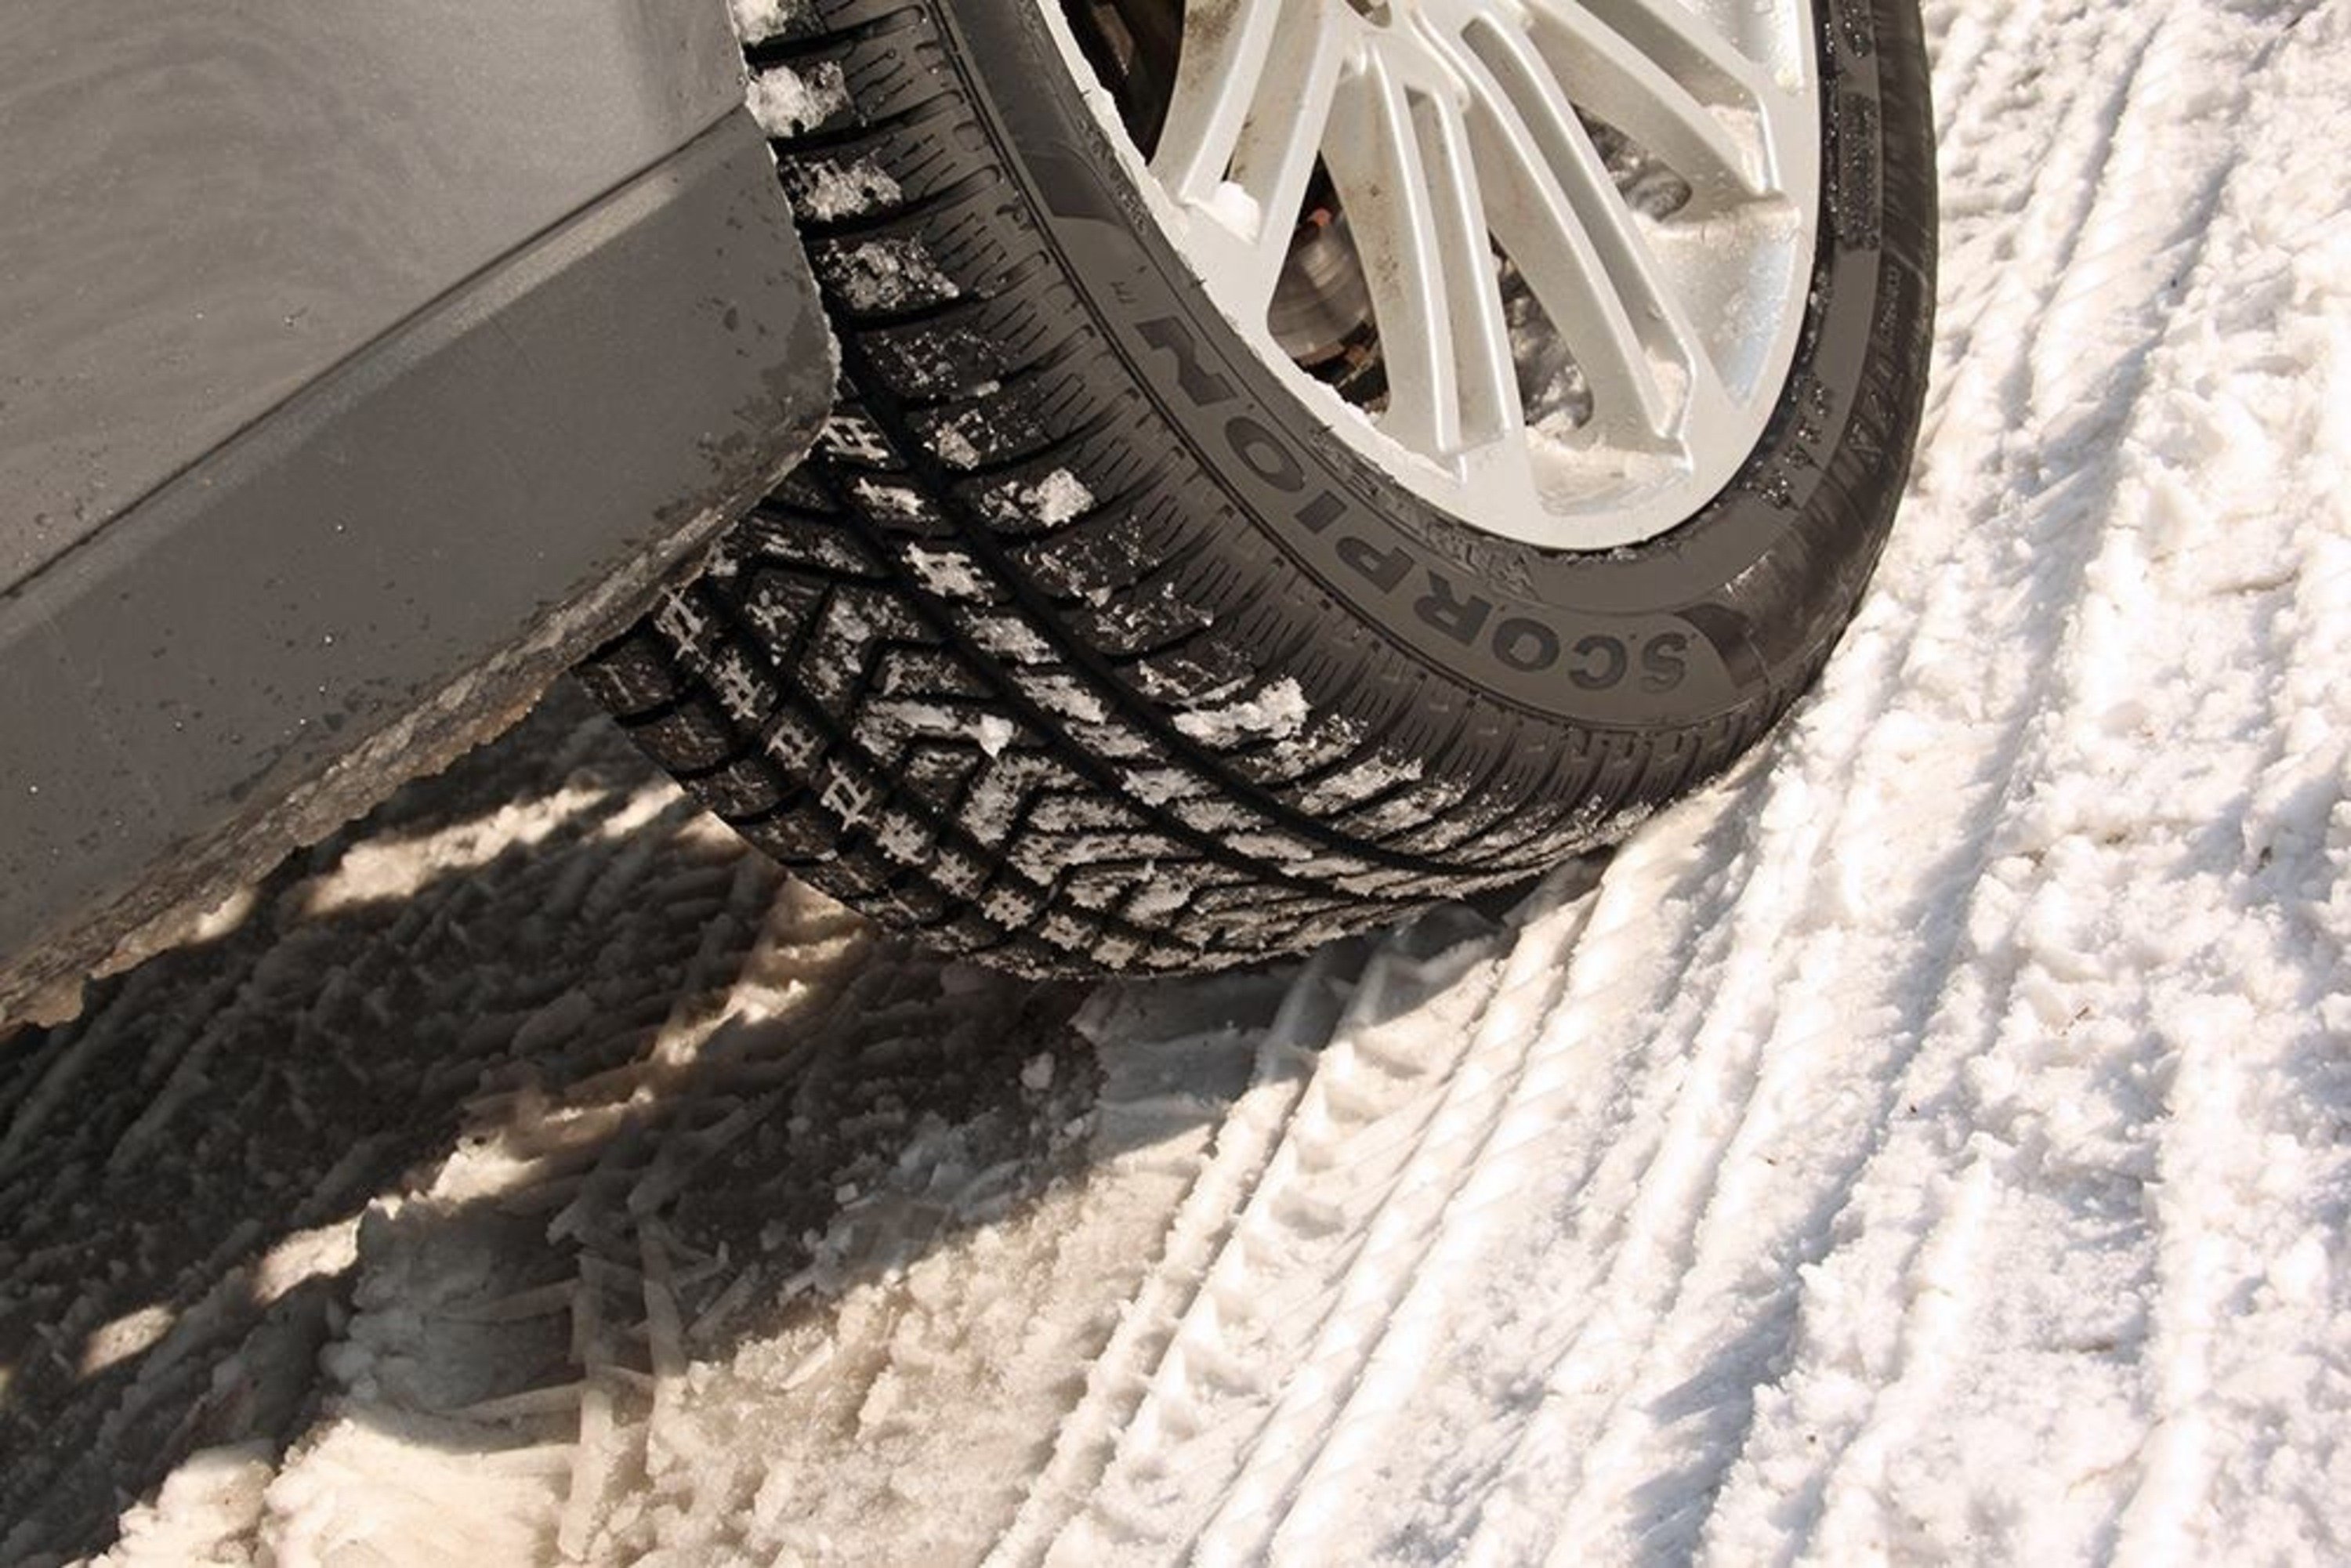 Obbligo gomme auto invernali: scelta, montaggio secondo normativa e ottimizzazione durata